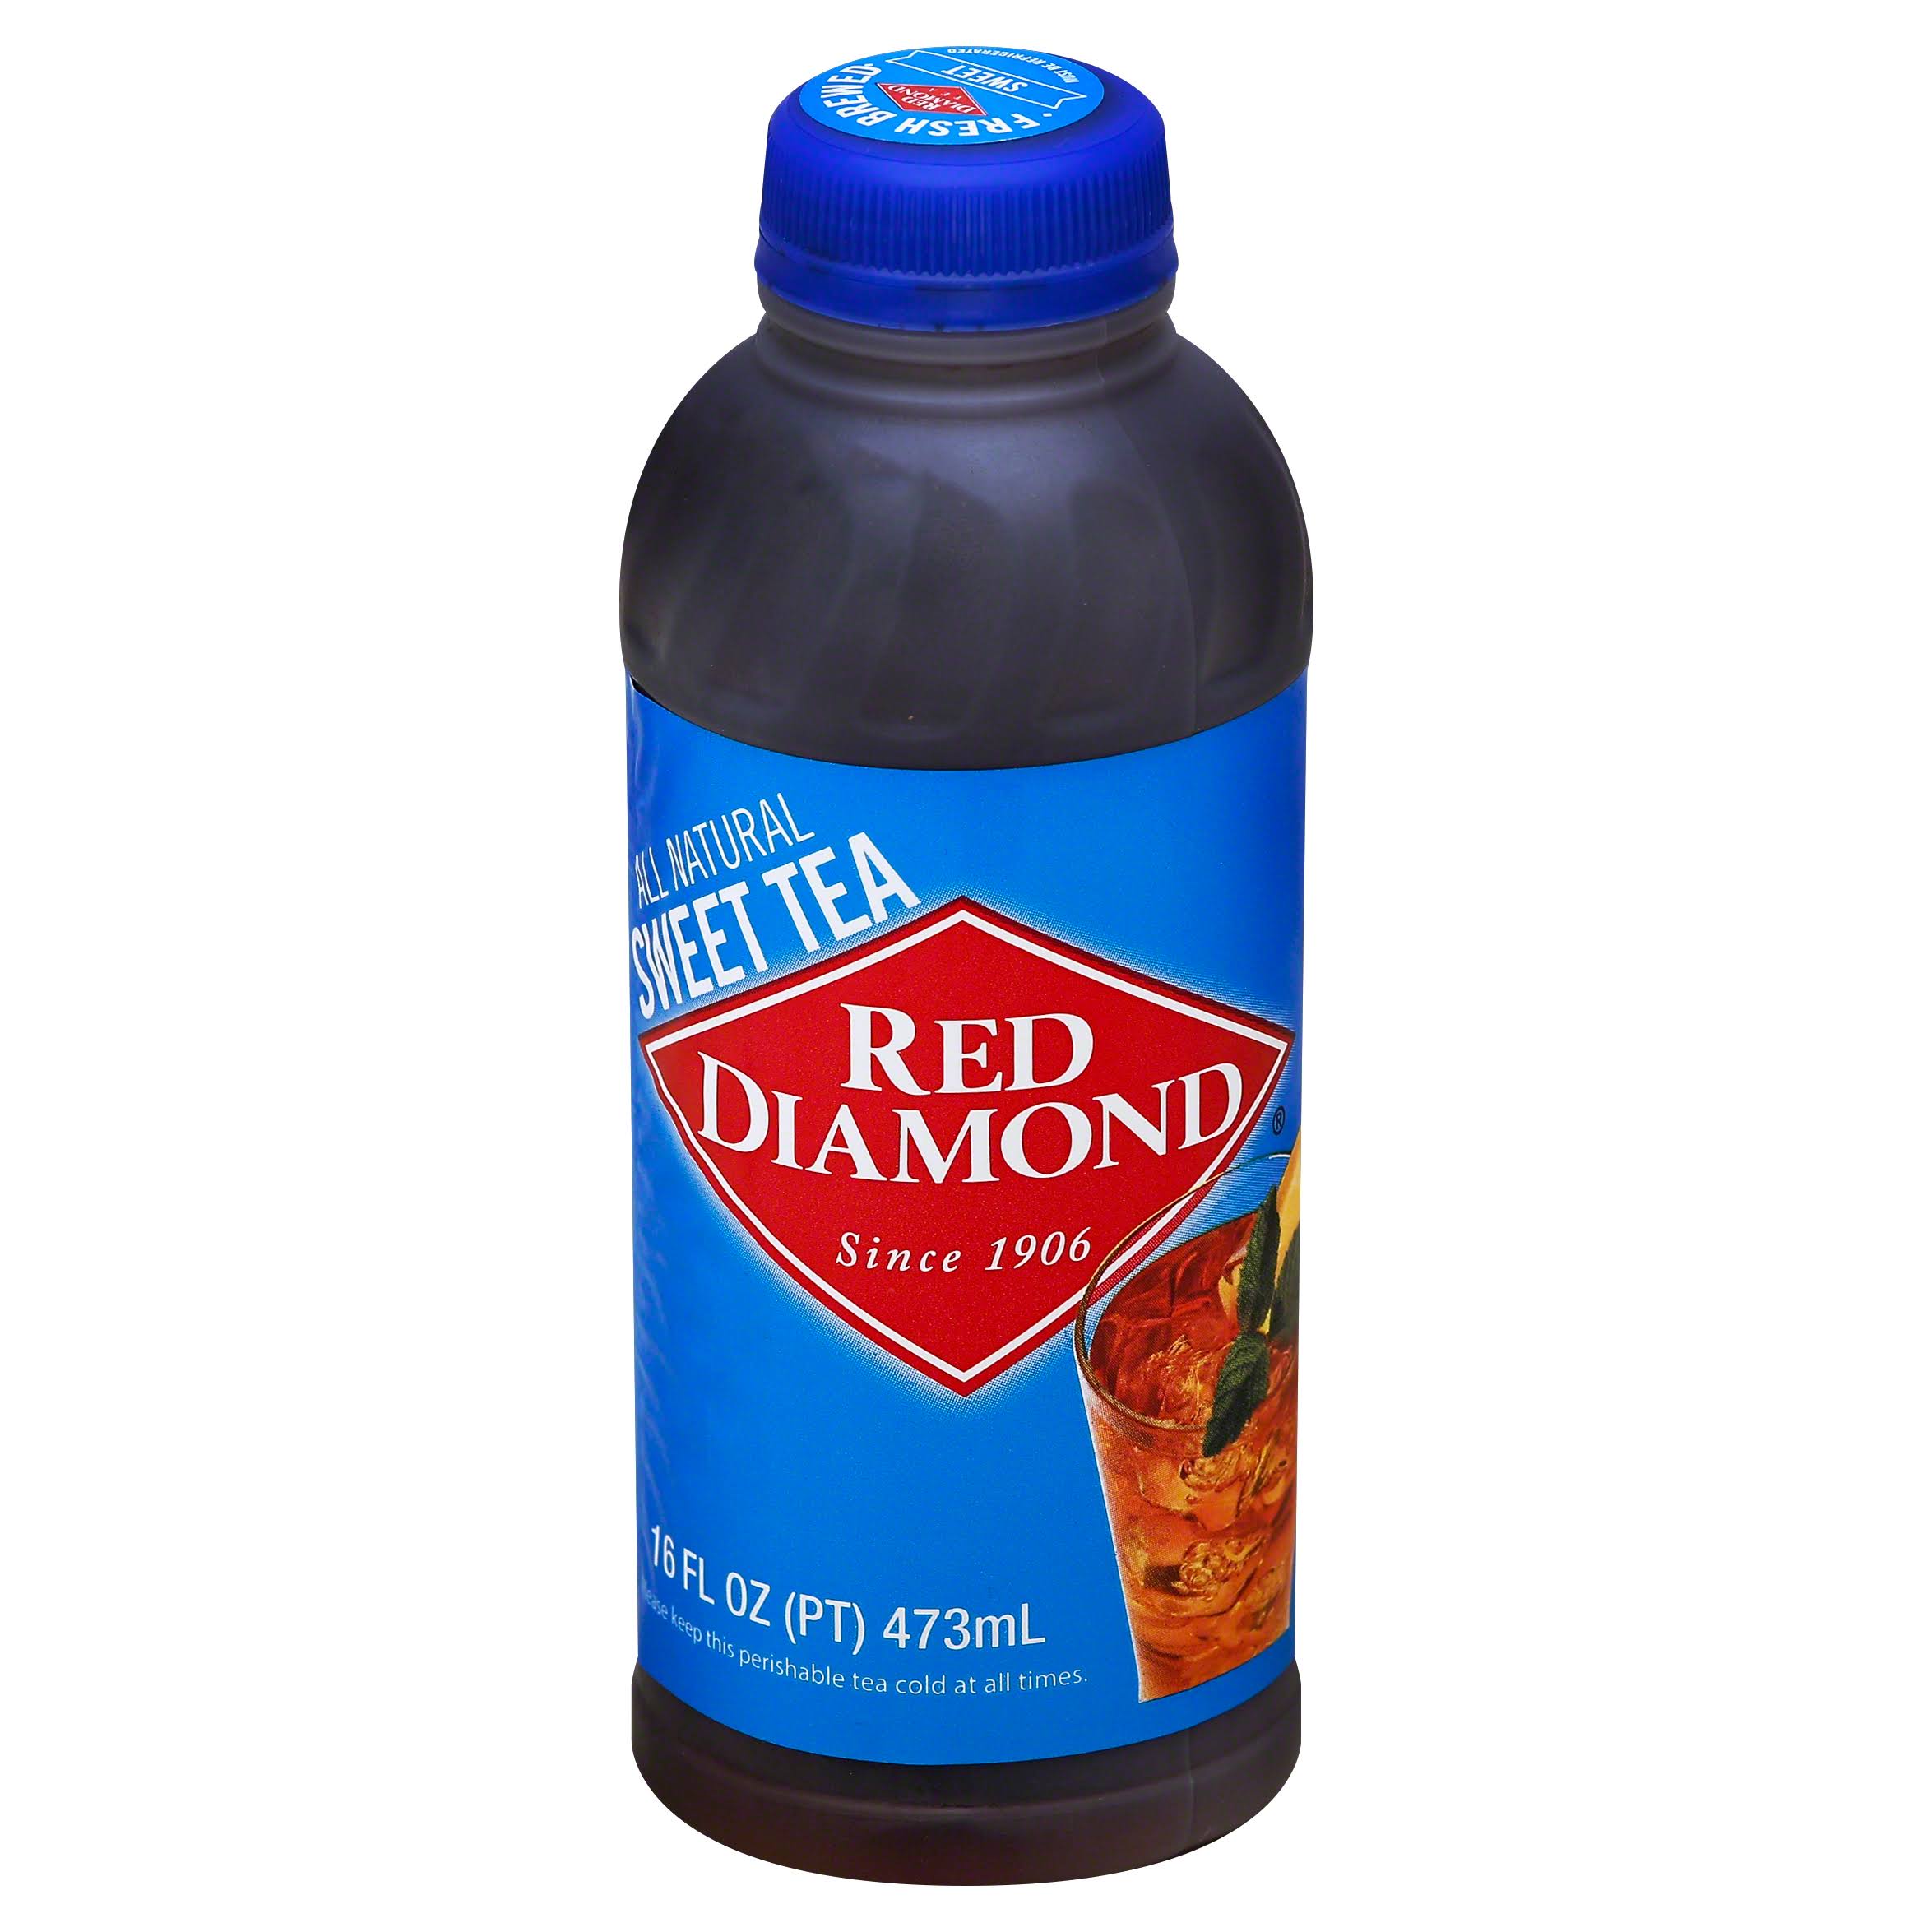 Red Diamond Sweet Tea